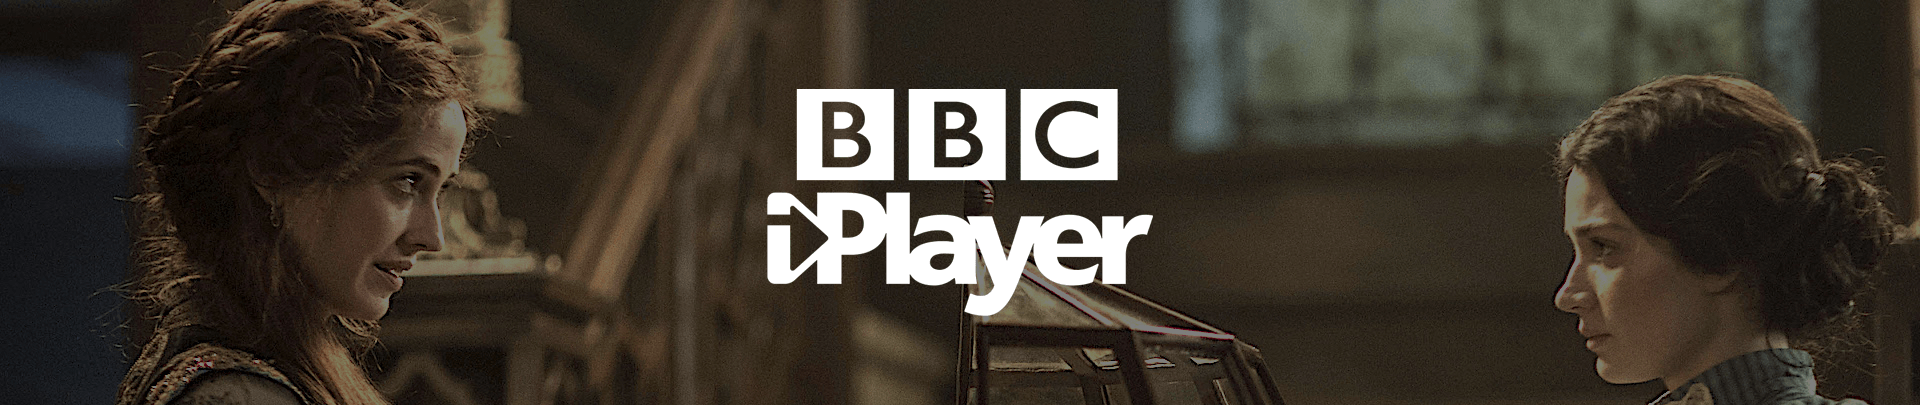 watch bbc iplayer outside uk